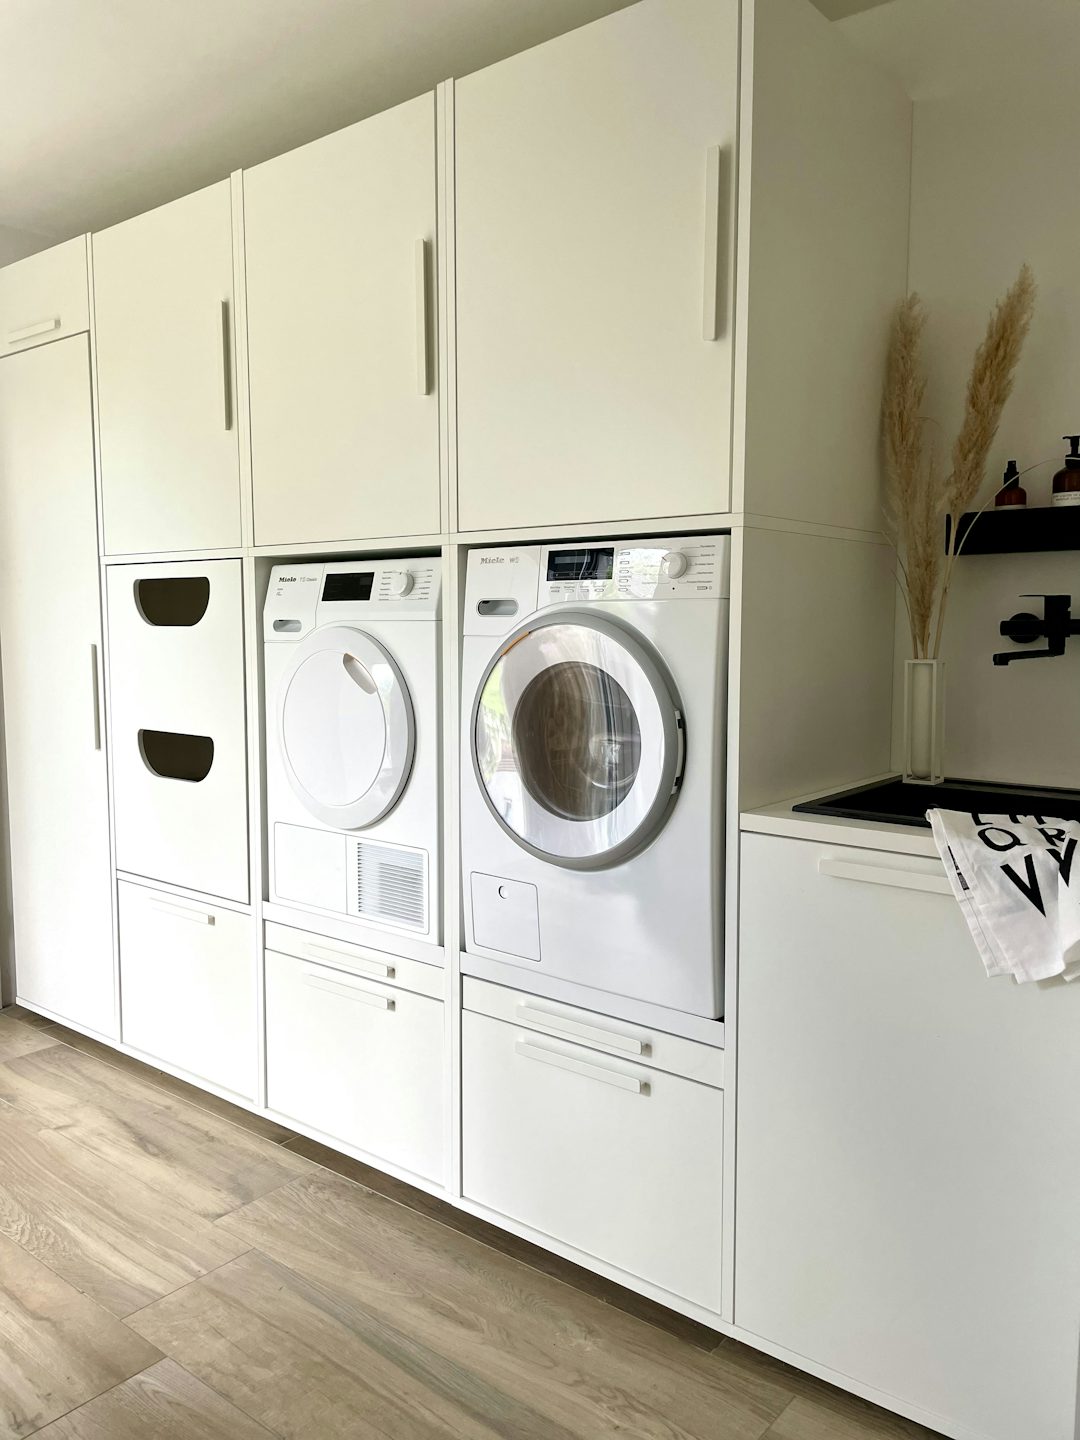 wasmachine kast met deuren dubbel naast elkaar inspiratie ideeen met decoratie opbergkast opzetkast uitschuiflade inzet stuk voor wasmand wit